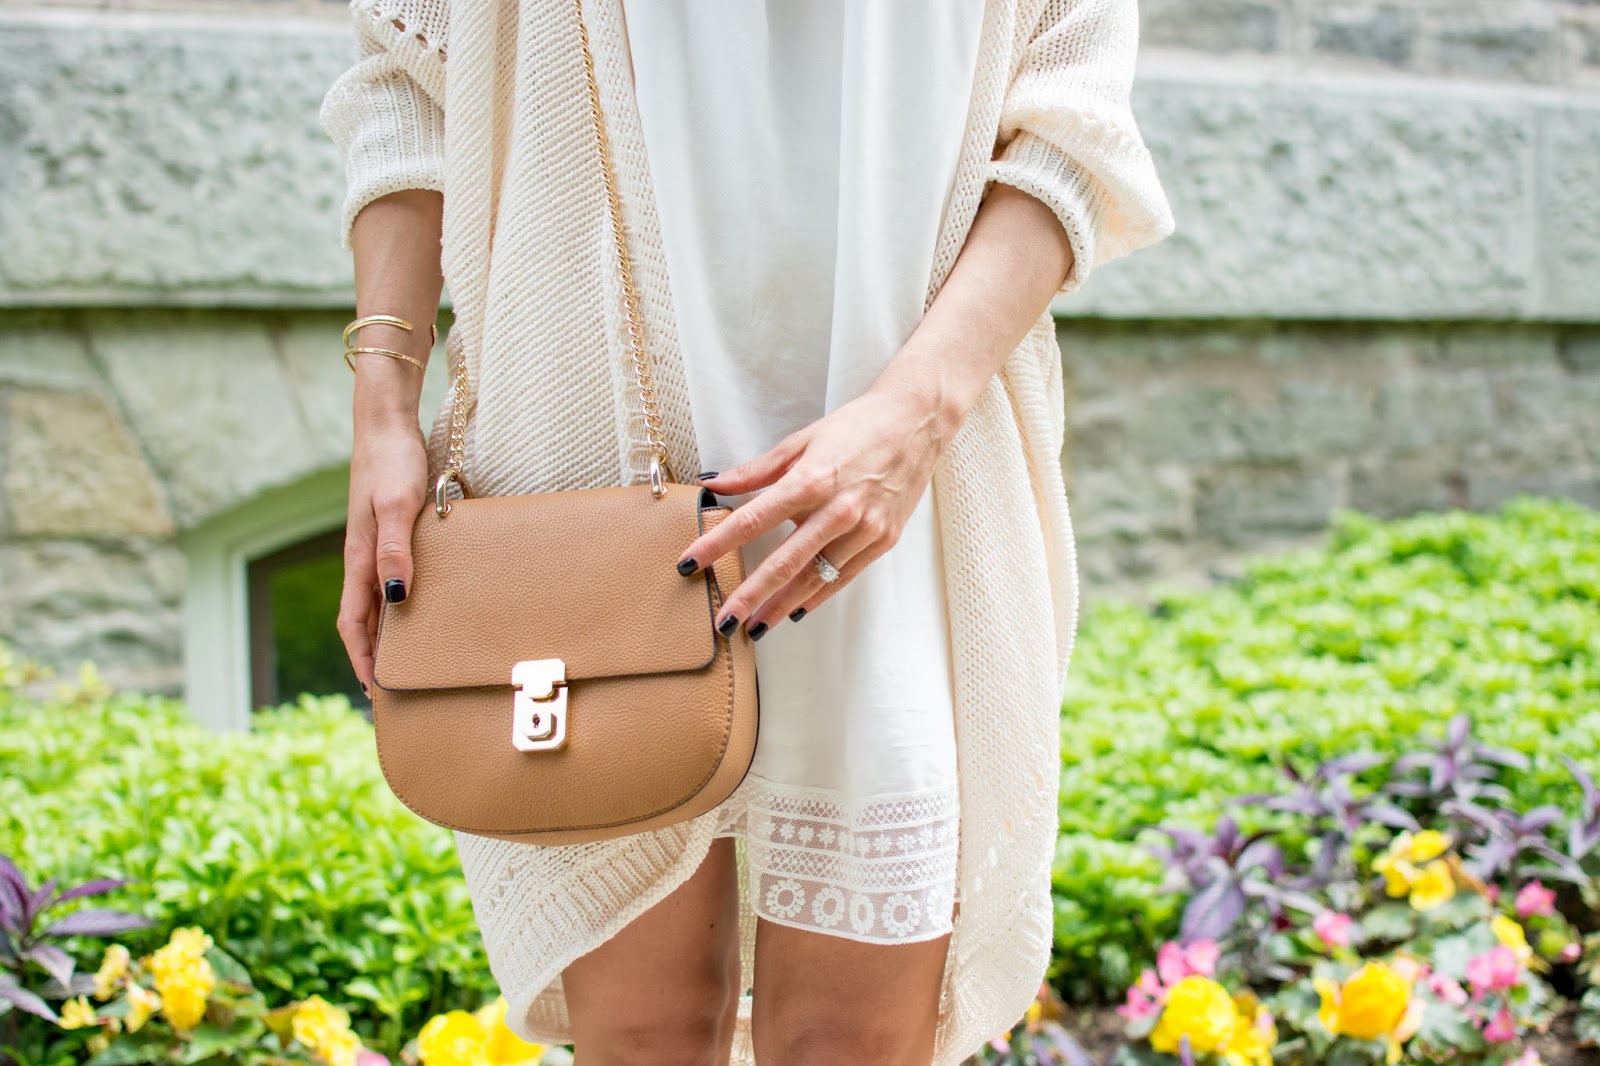 OOTD - White On White + Fast Fashion Bags | La Petite Noob | A Toronto ...